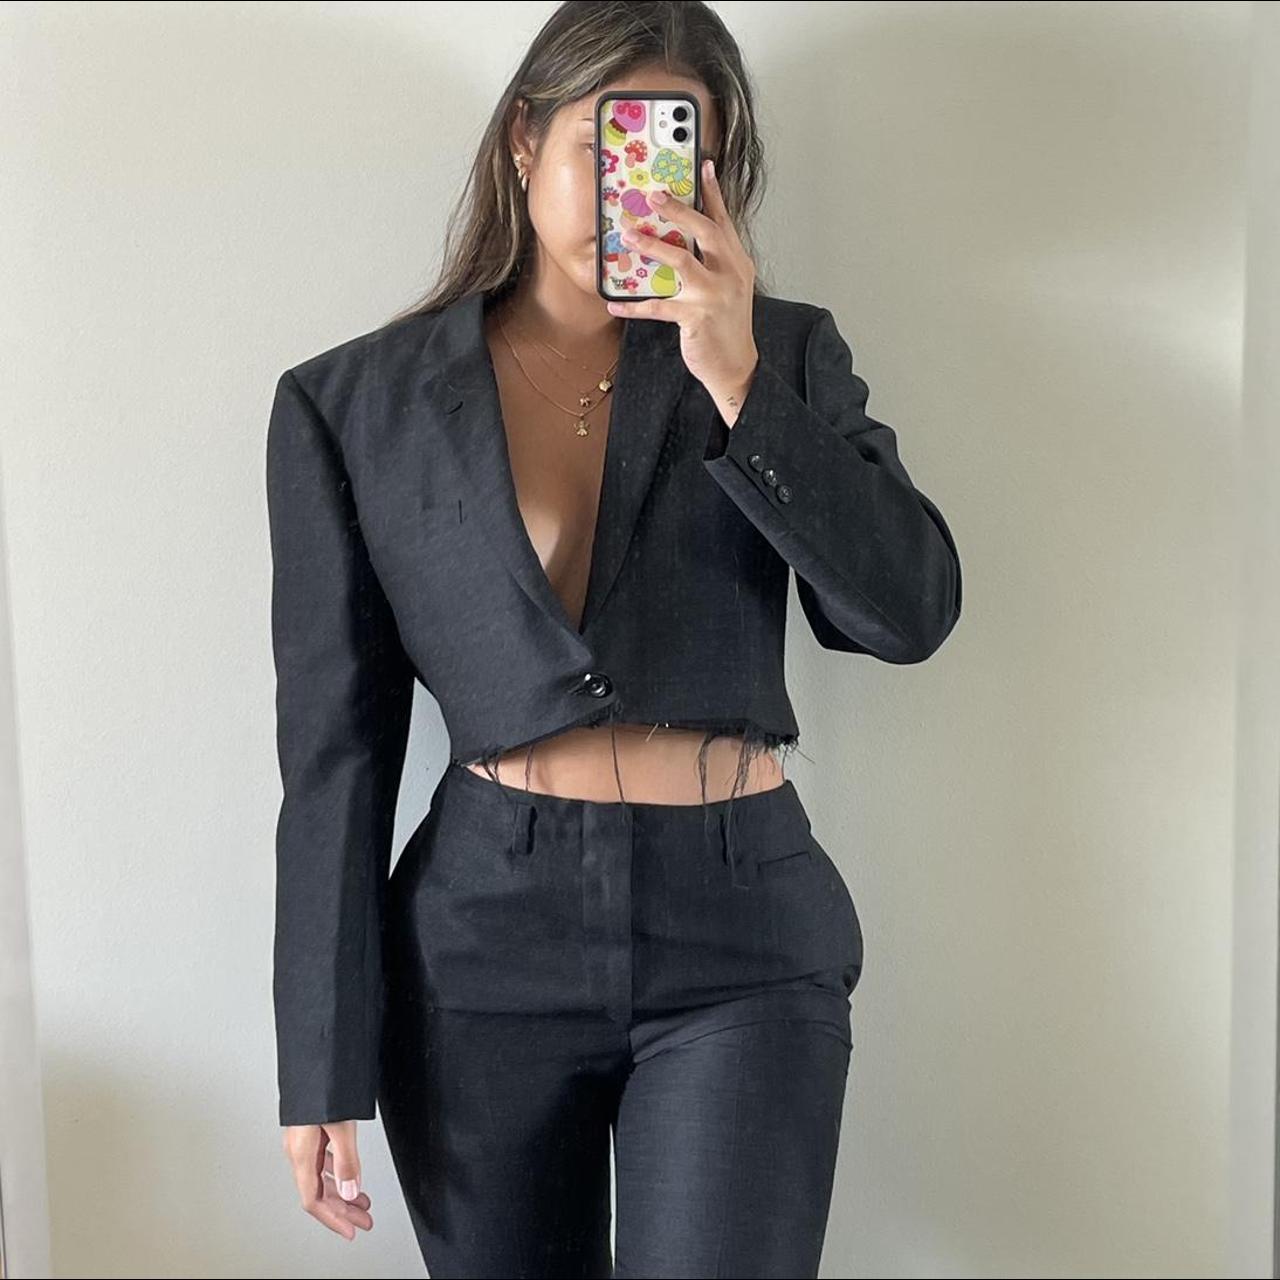 Women's Black and Grey Suit | Depop